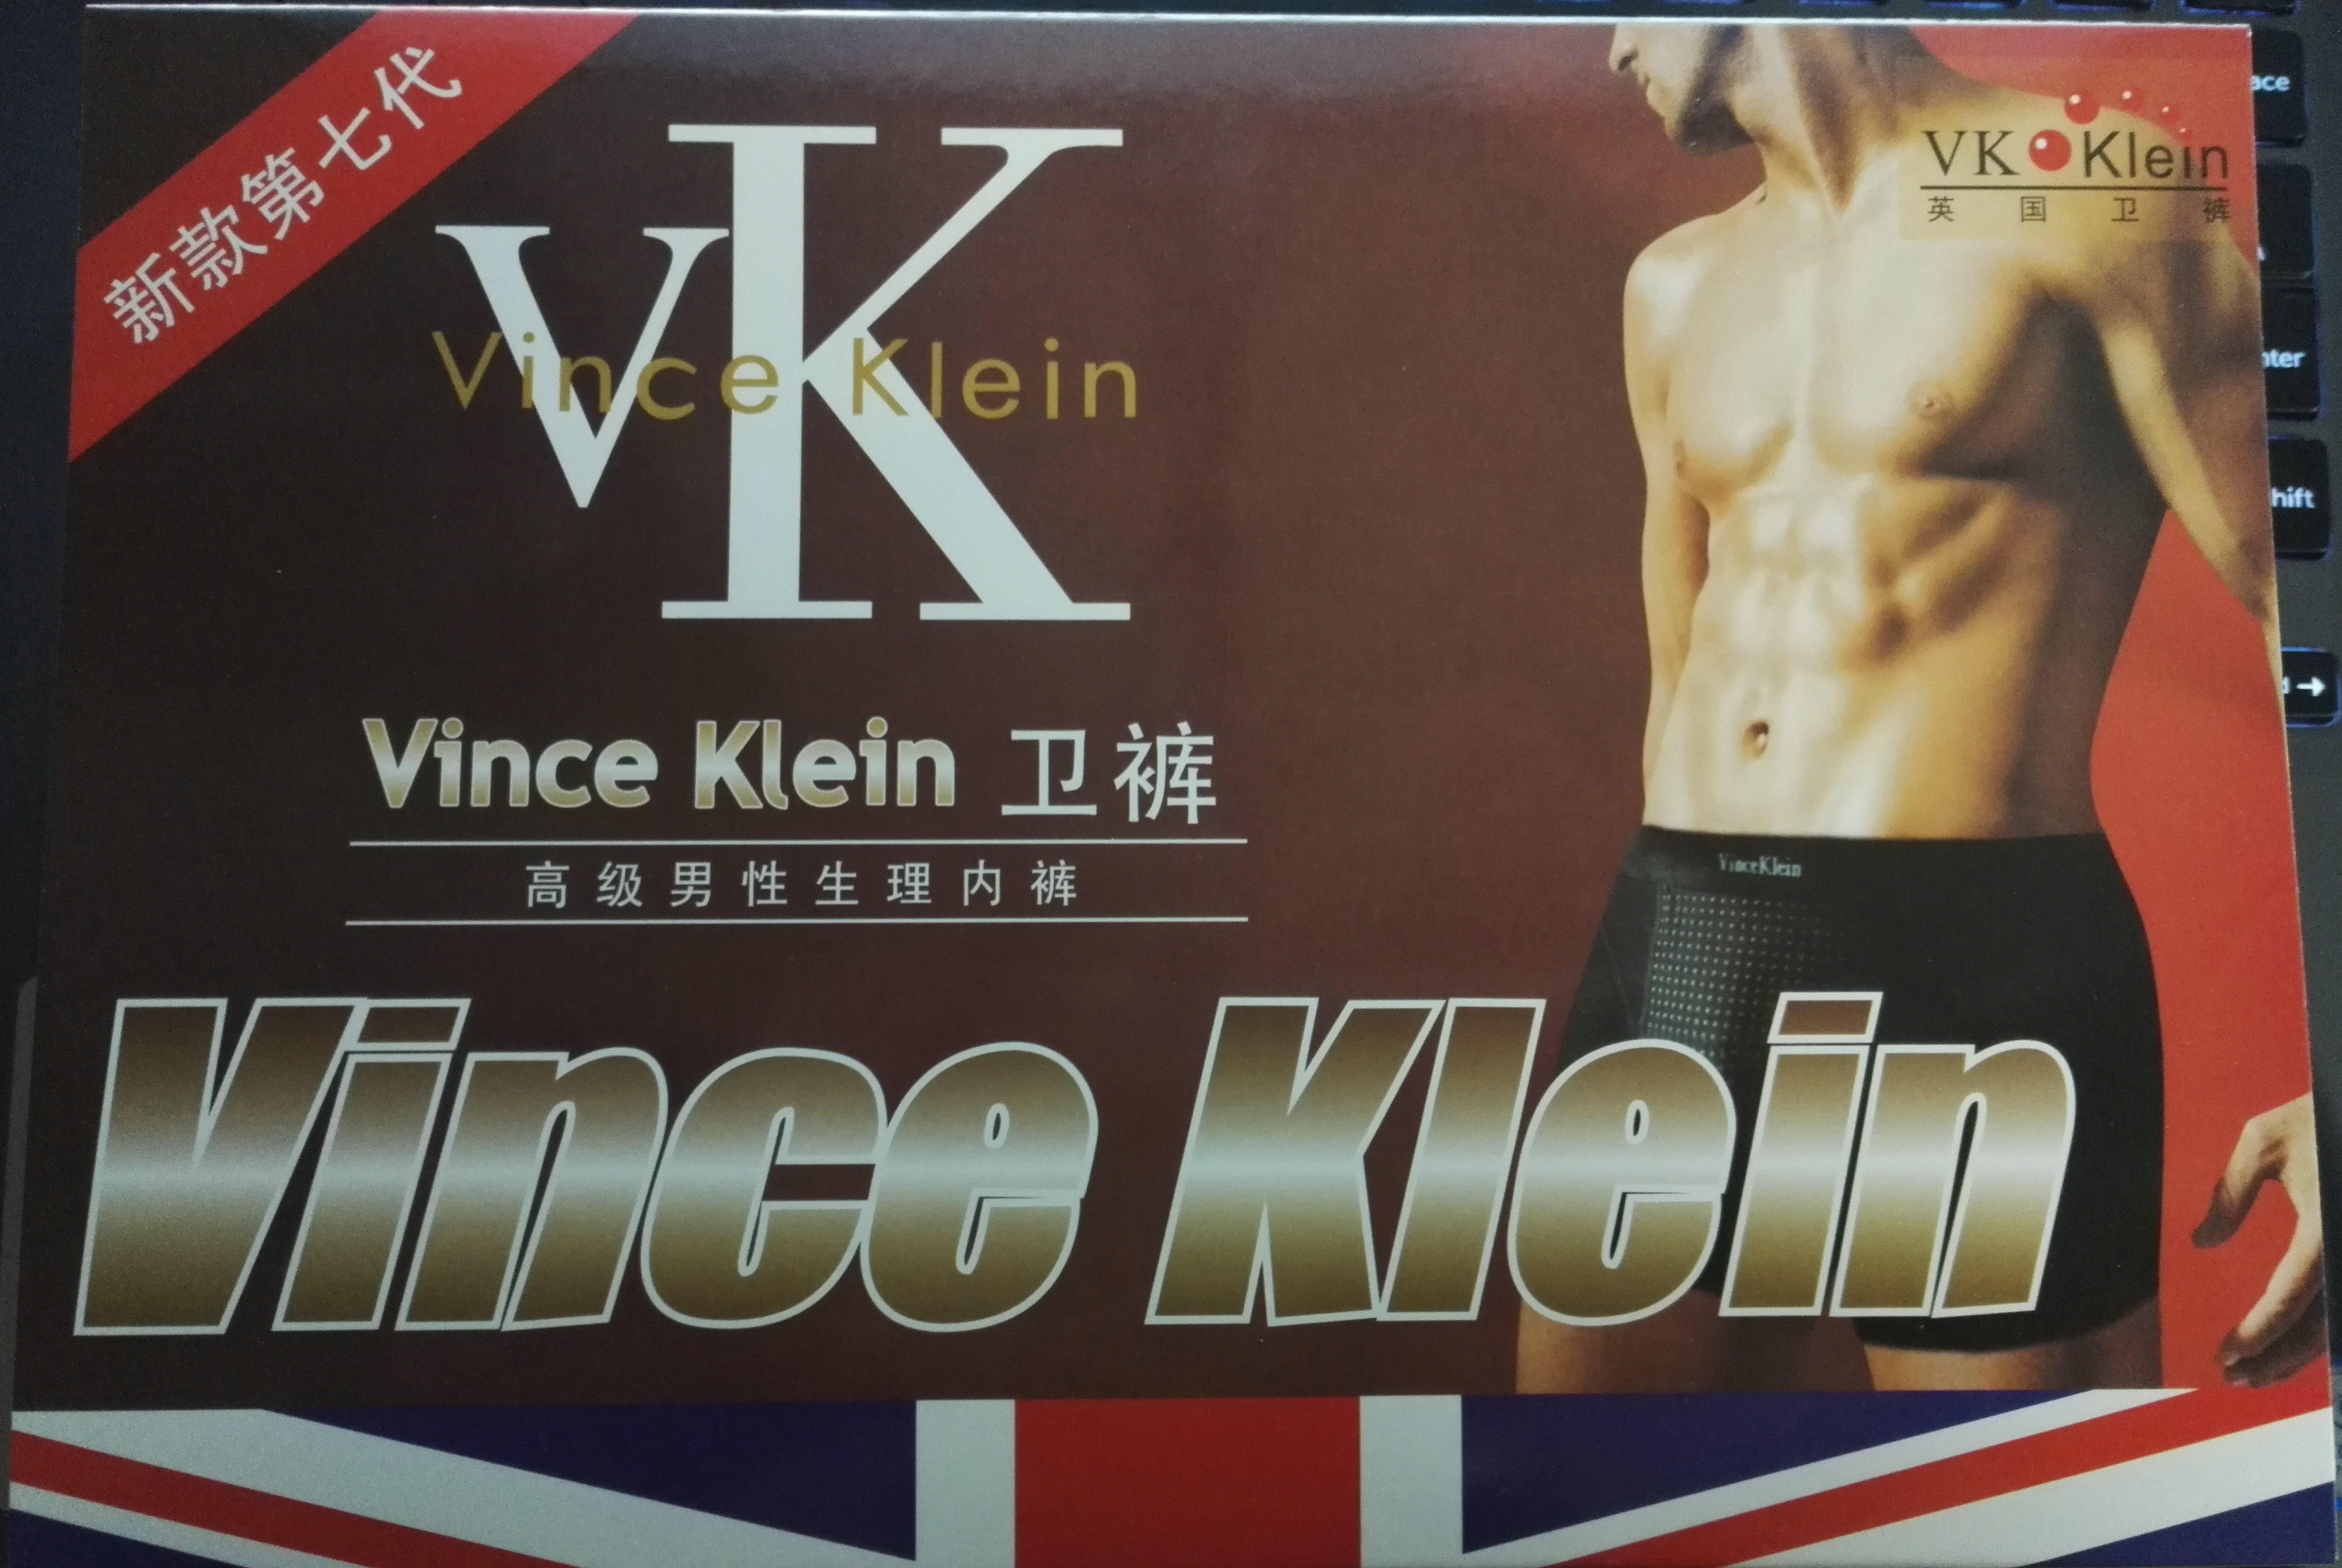 第七代正品英国卫裤VK磁疗男性生理保健内裤批发零销支一件代发图片